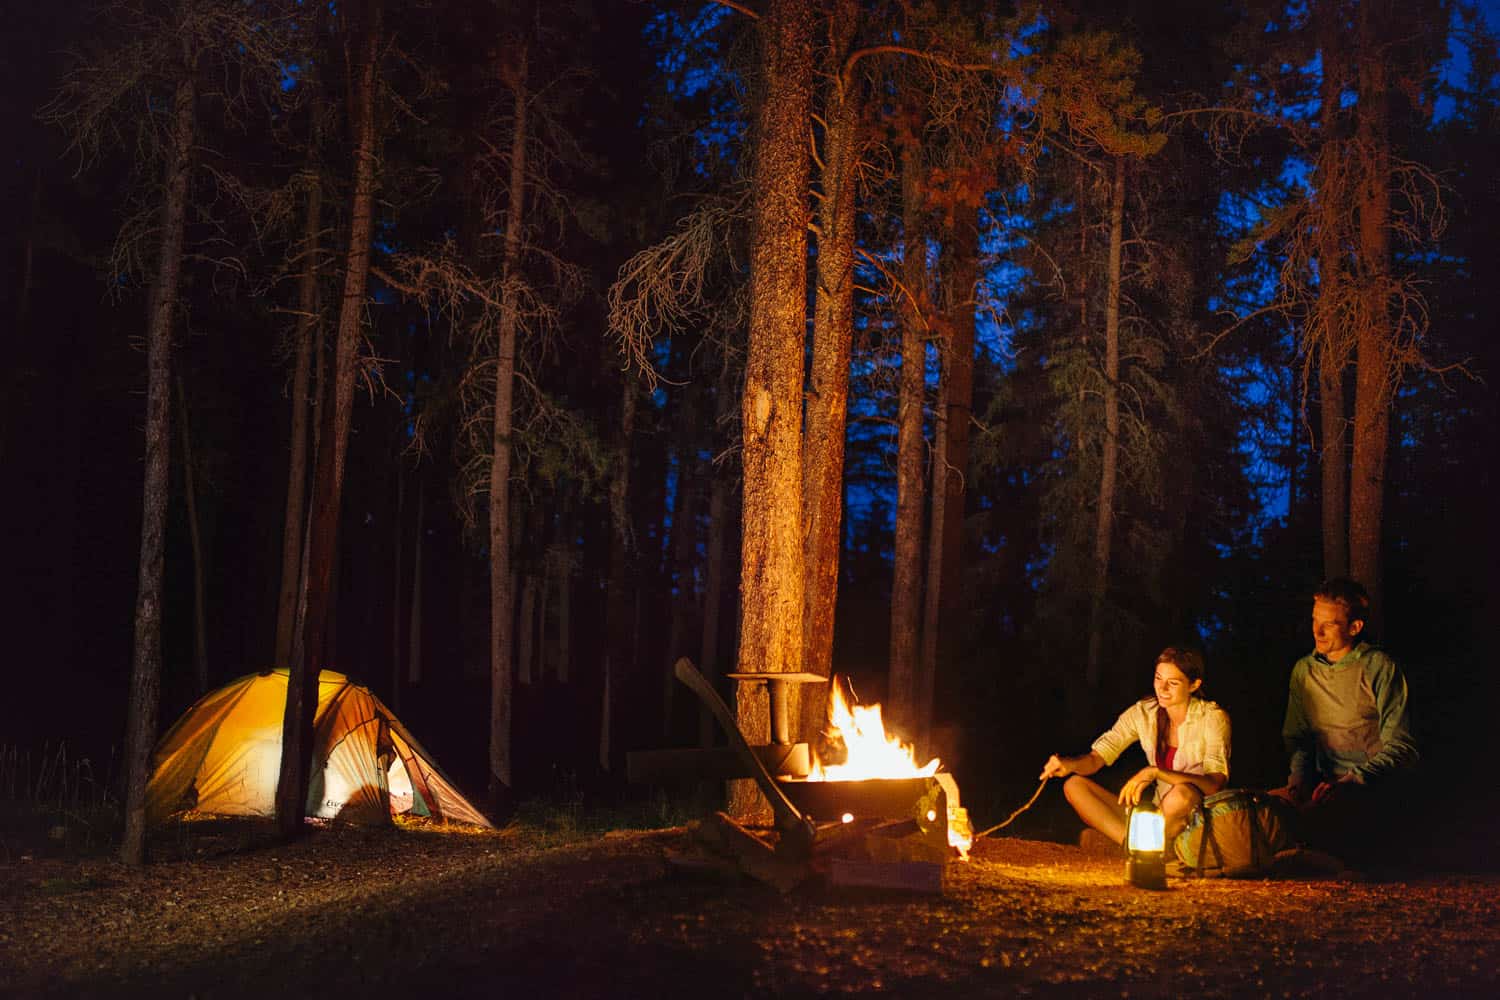 Tent camping at night